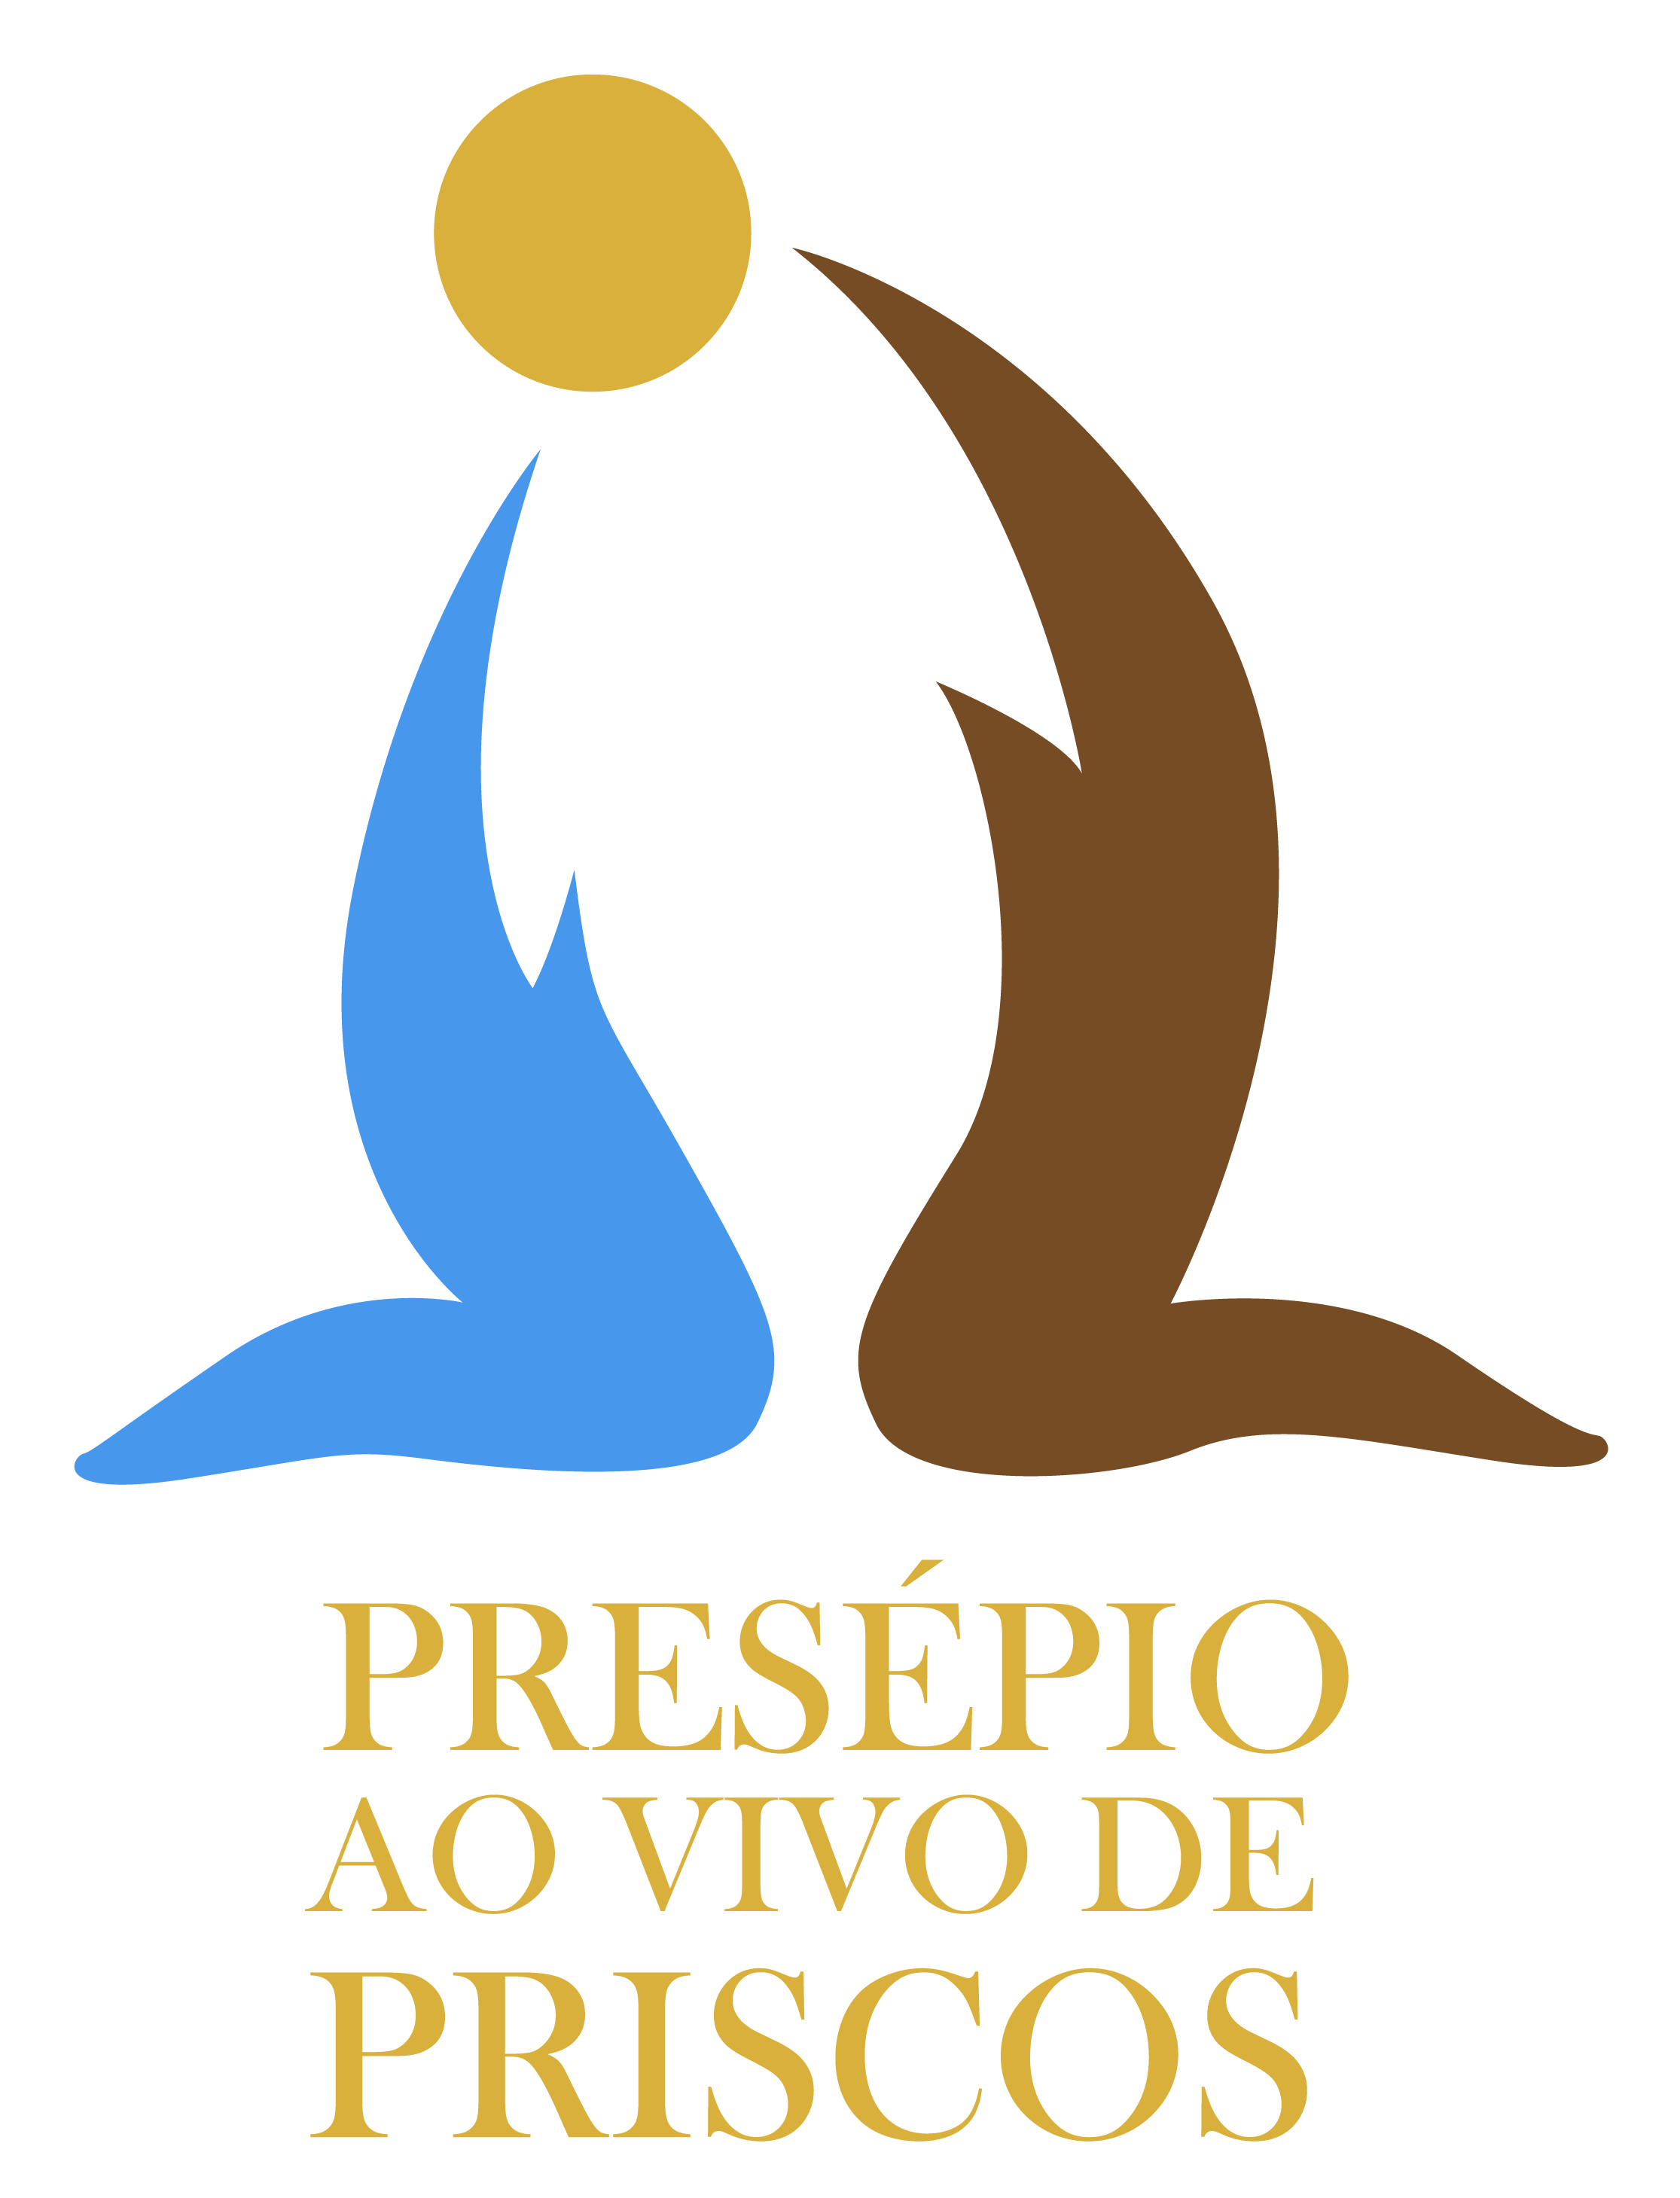 Presépio Ao Vivo de Priscos - Portugal